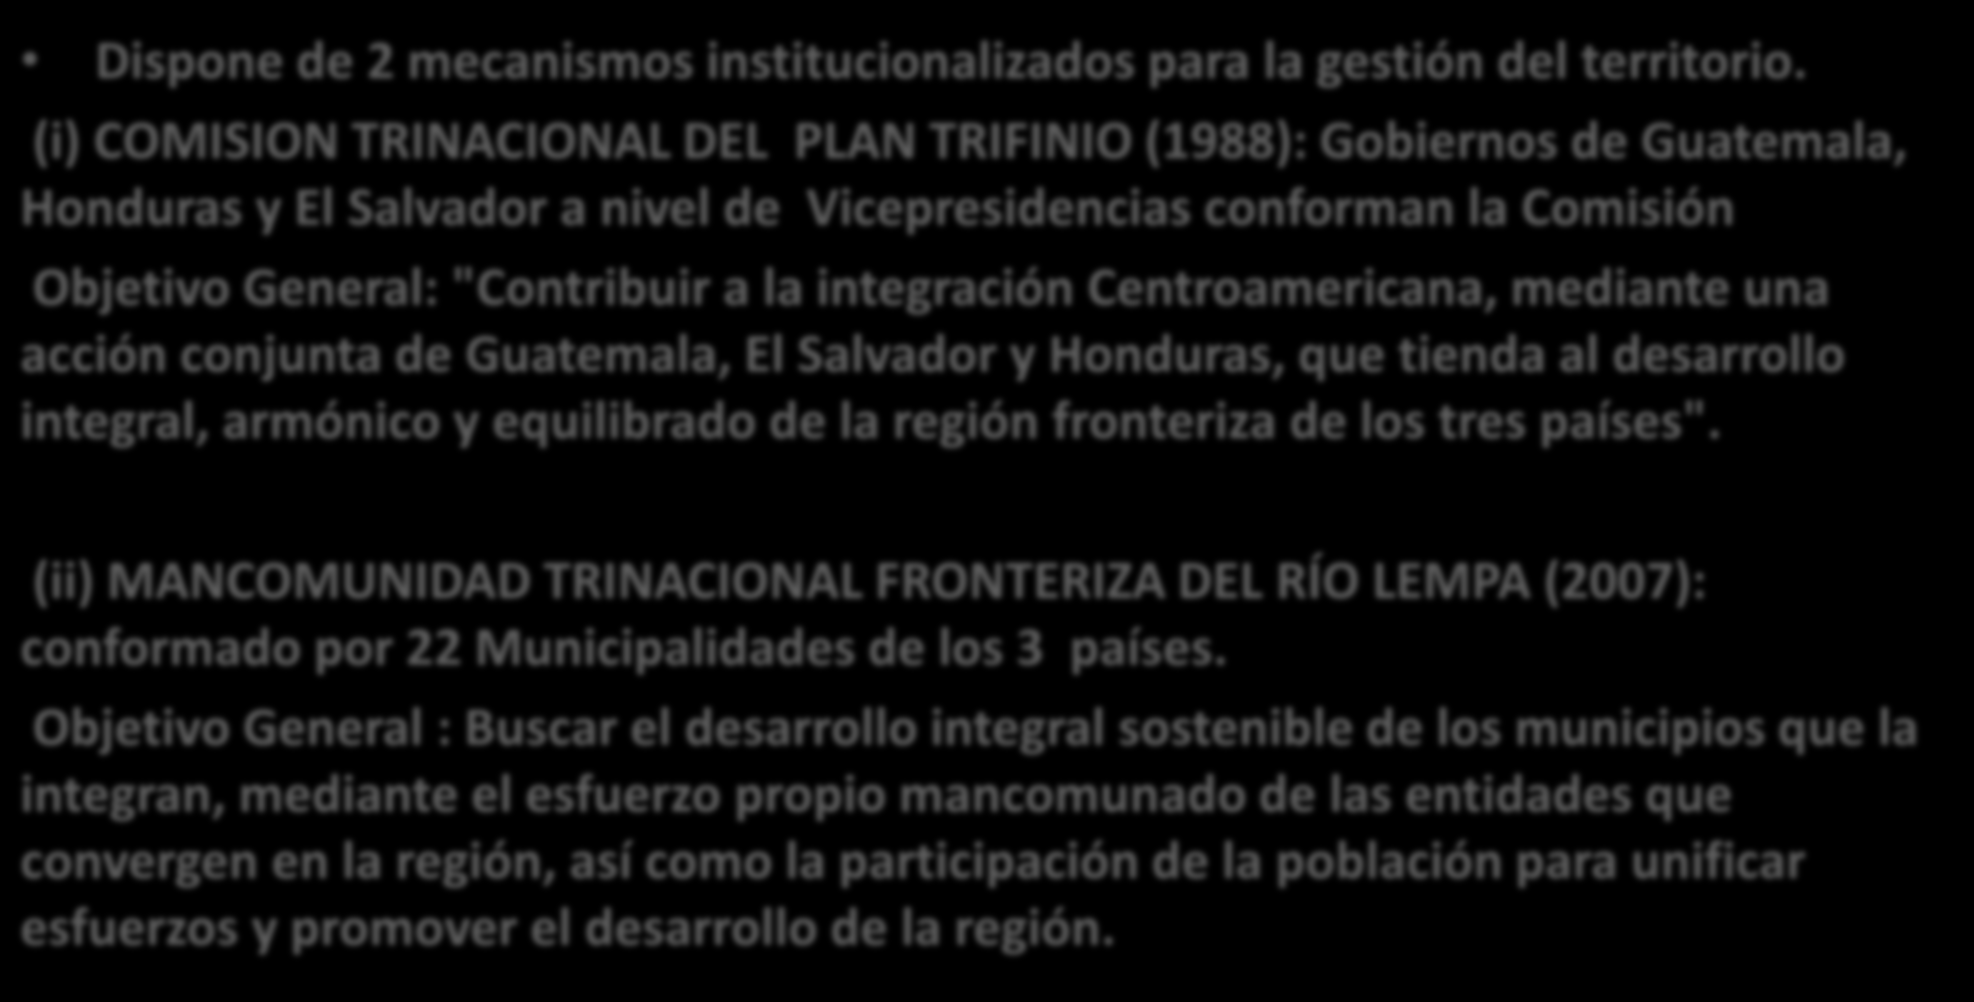 Institucionalidad de la Región del Trifinio Cuenca Alta del Lempa Dispone de 2 mecanismos institucionalizados para la gestión del territorio.